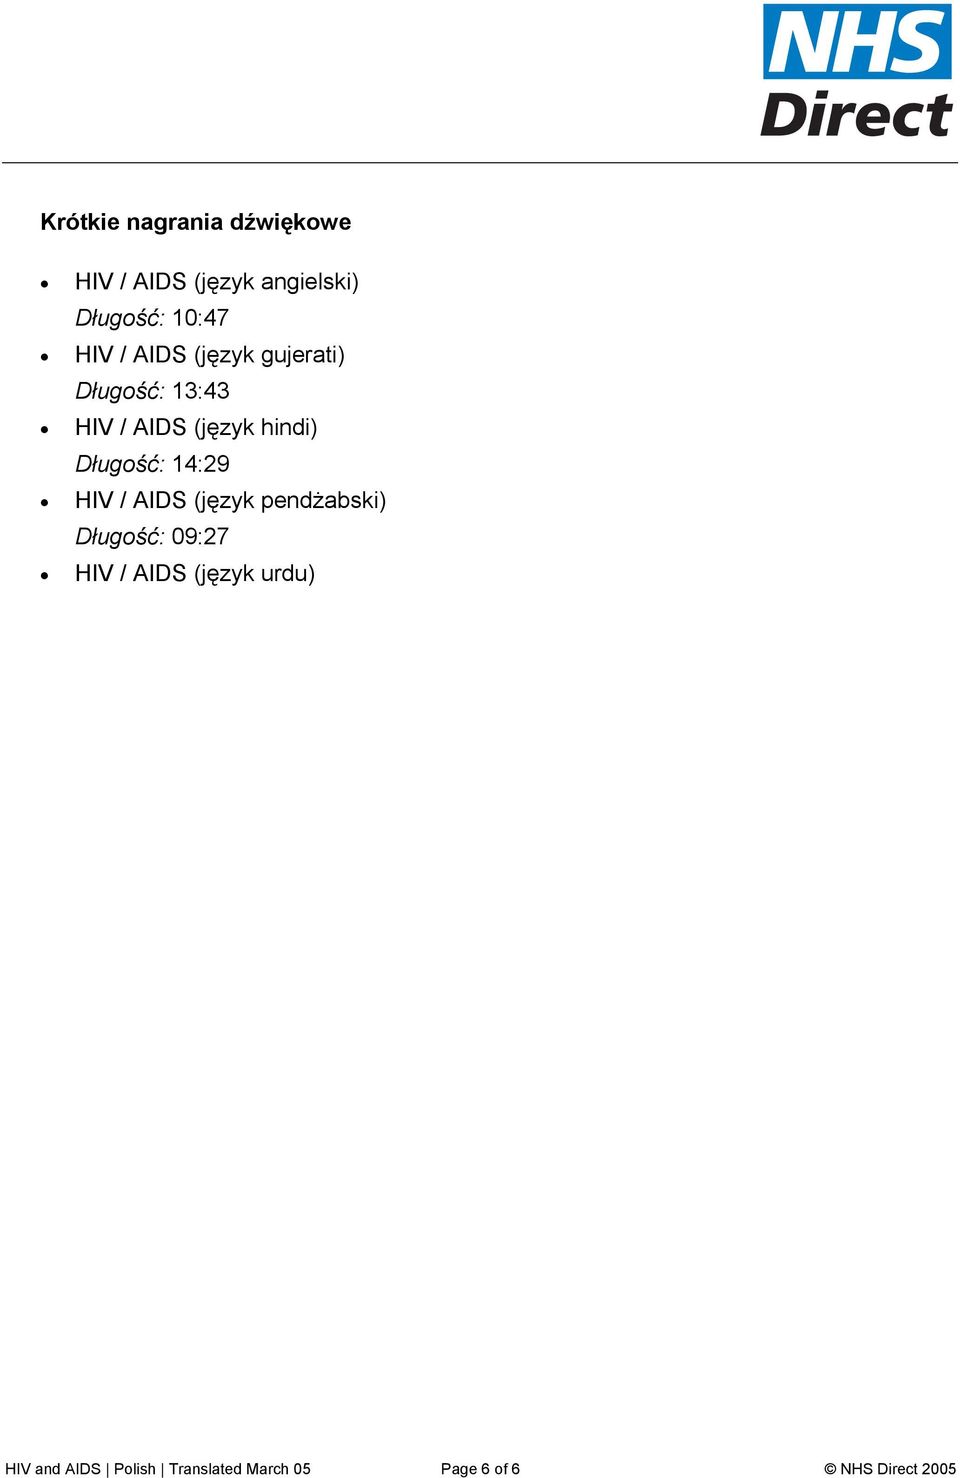 Długość: 14:29 HIV / AIDS (język pendżabski) Długość: 09:27 HIV / AIDS